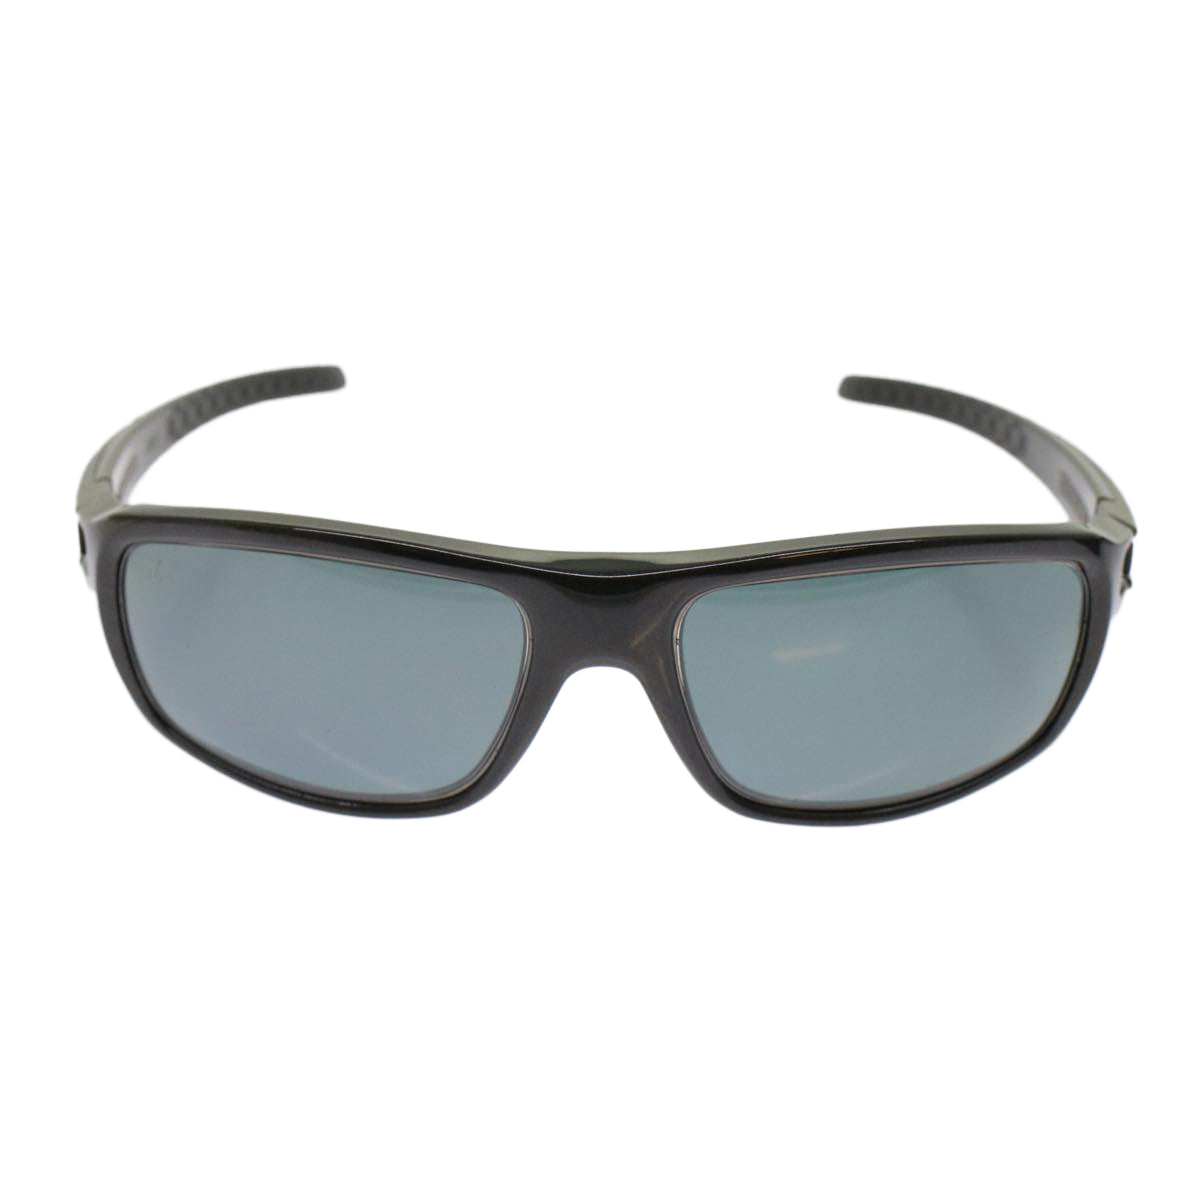 LOUIS VUITTON Sunglasses Black J1017 LV Auth ar10010